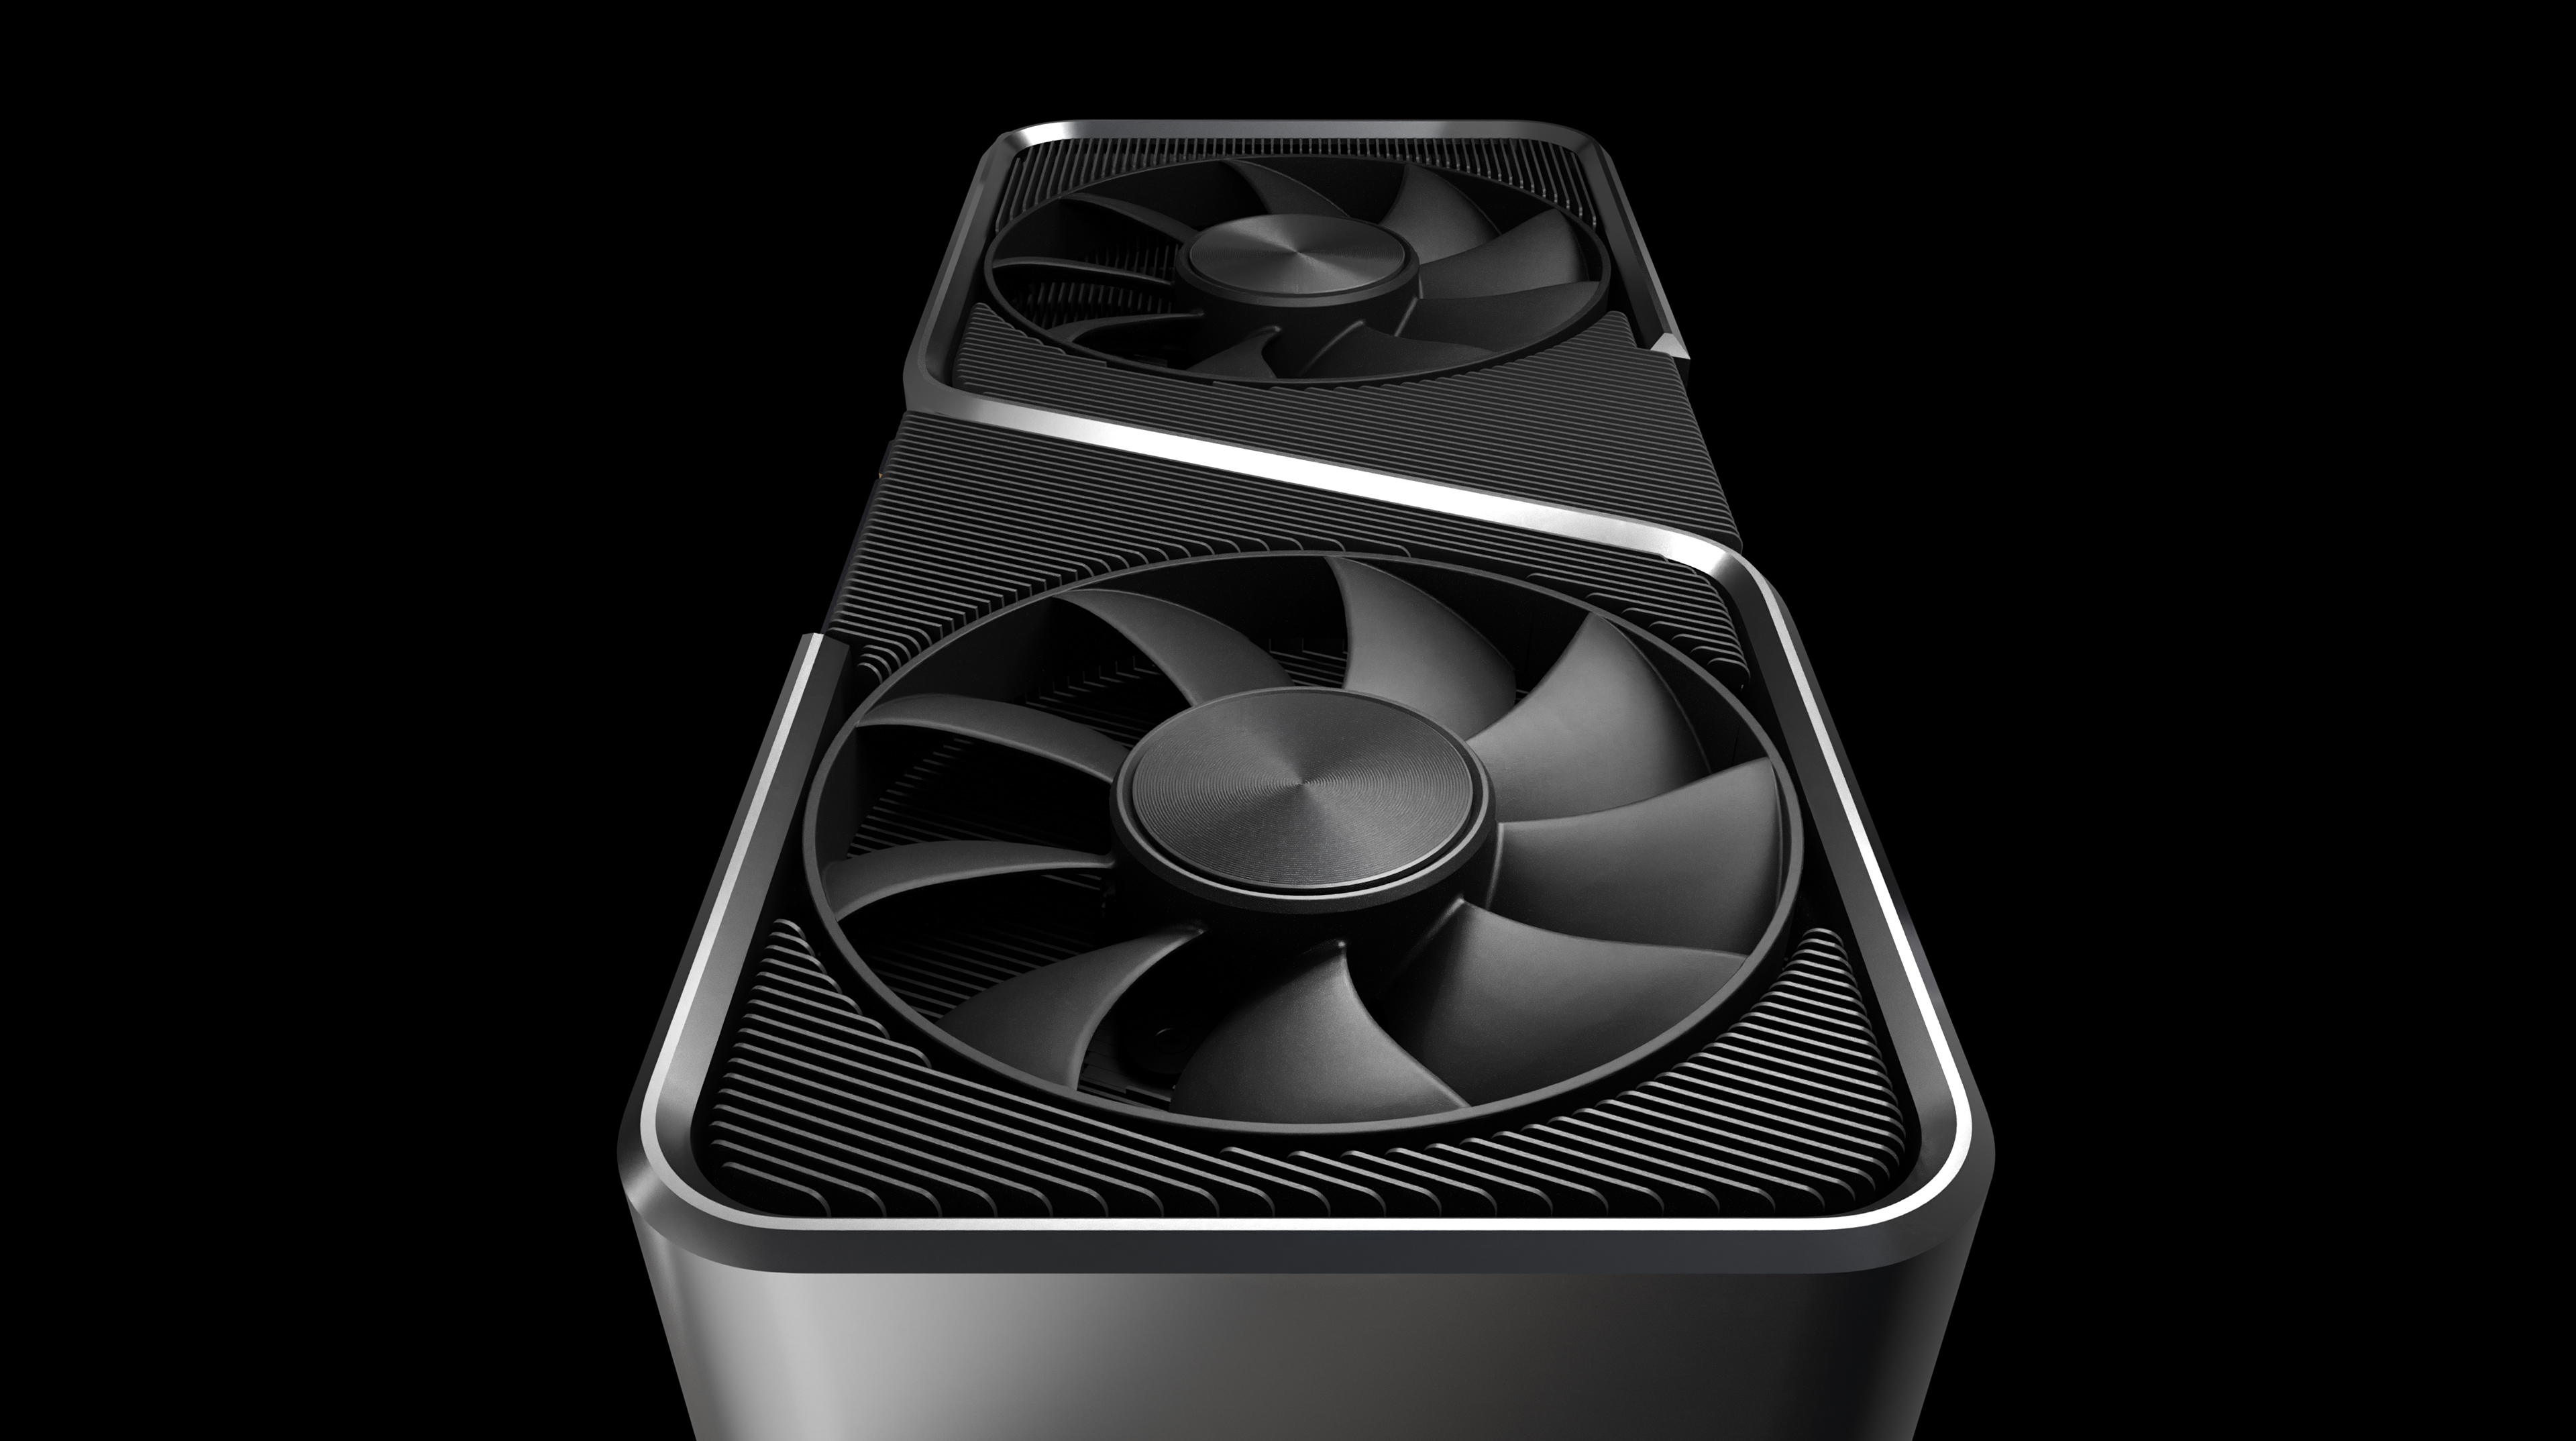 Immagine pubblicata in relazione al seguente contenuto: NVIDIA annuncia ufficialmente le GeForce RTX 3090, RTX 3080 e RTX 3070 | Nome immagine: news31078_GeForce-RTX-30-Series_6.jpg